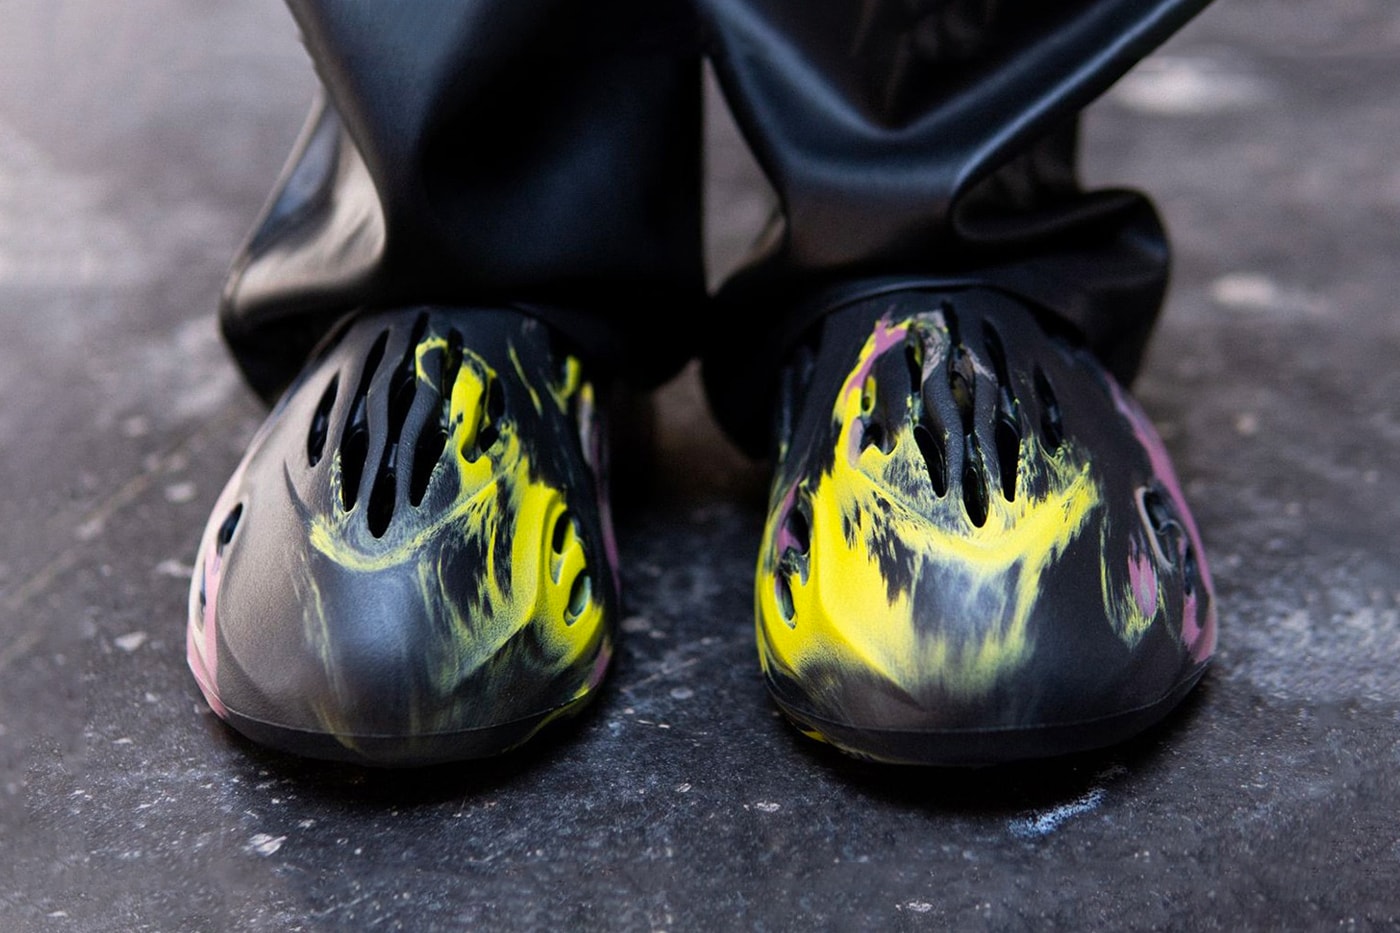 adidas YEEZY Foam Runner MX Carbon First Look